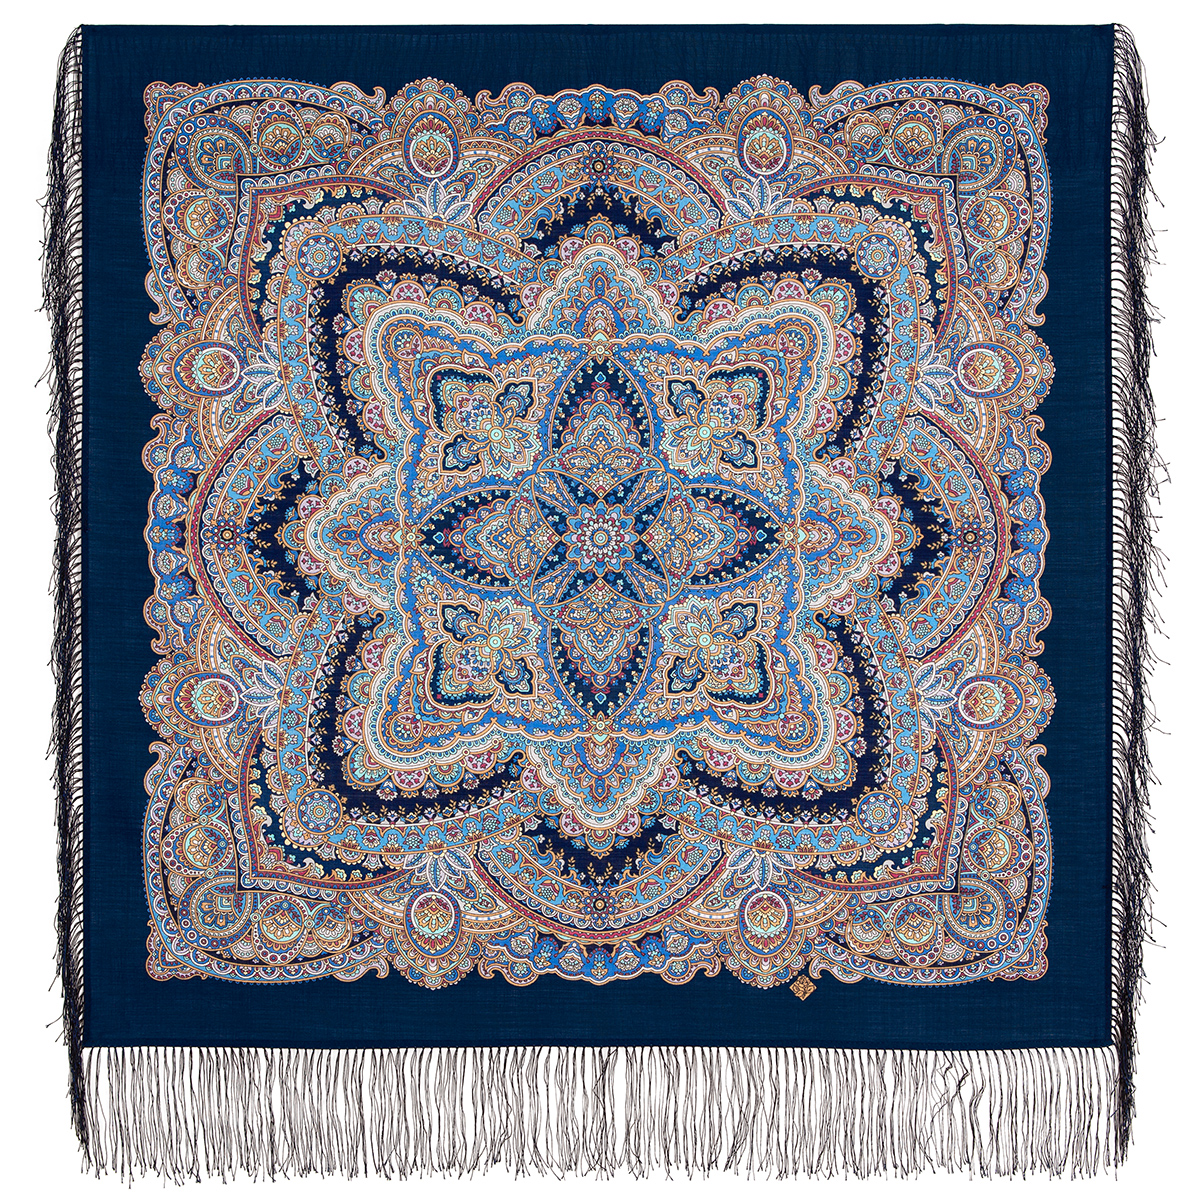 Платок женский Павловопосадский платок 1926 синий/бирюзовый, 89x89 см